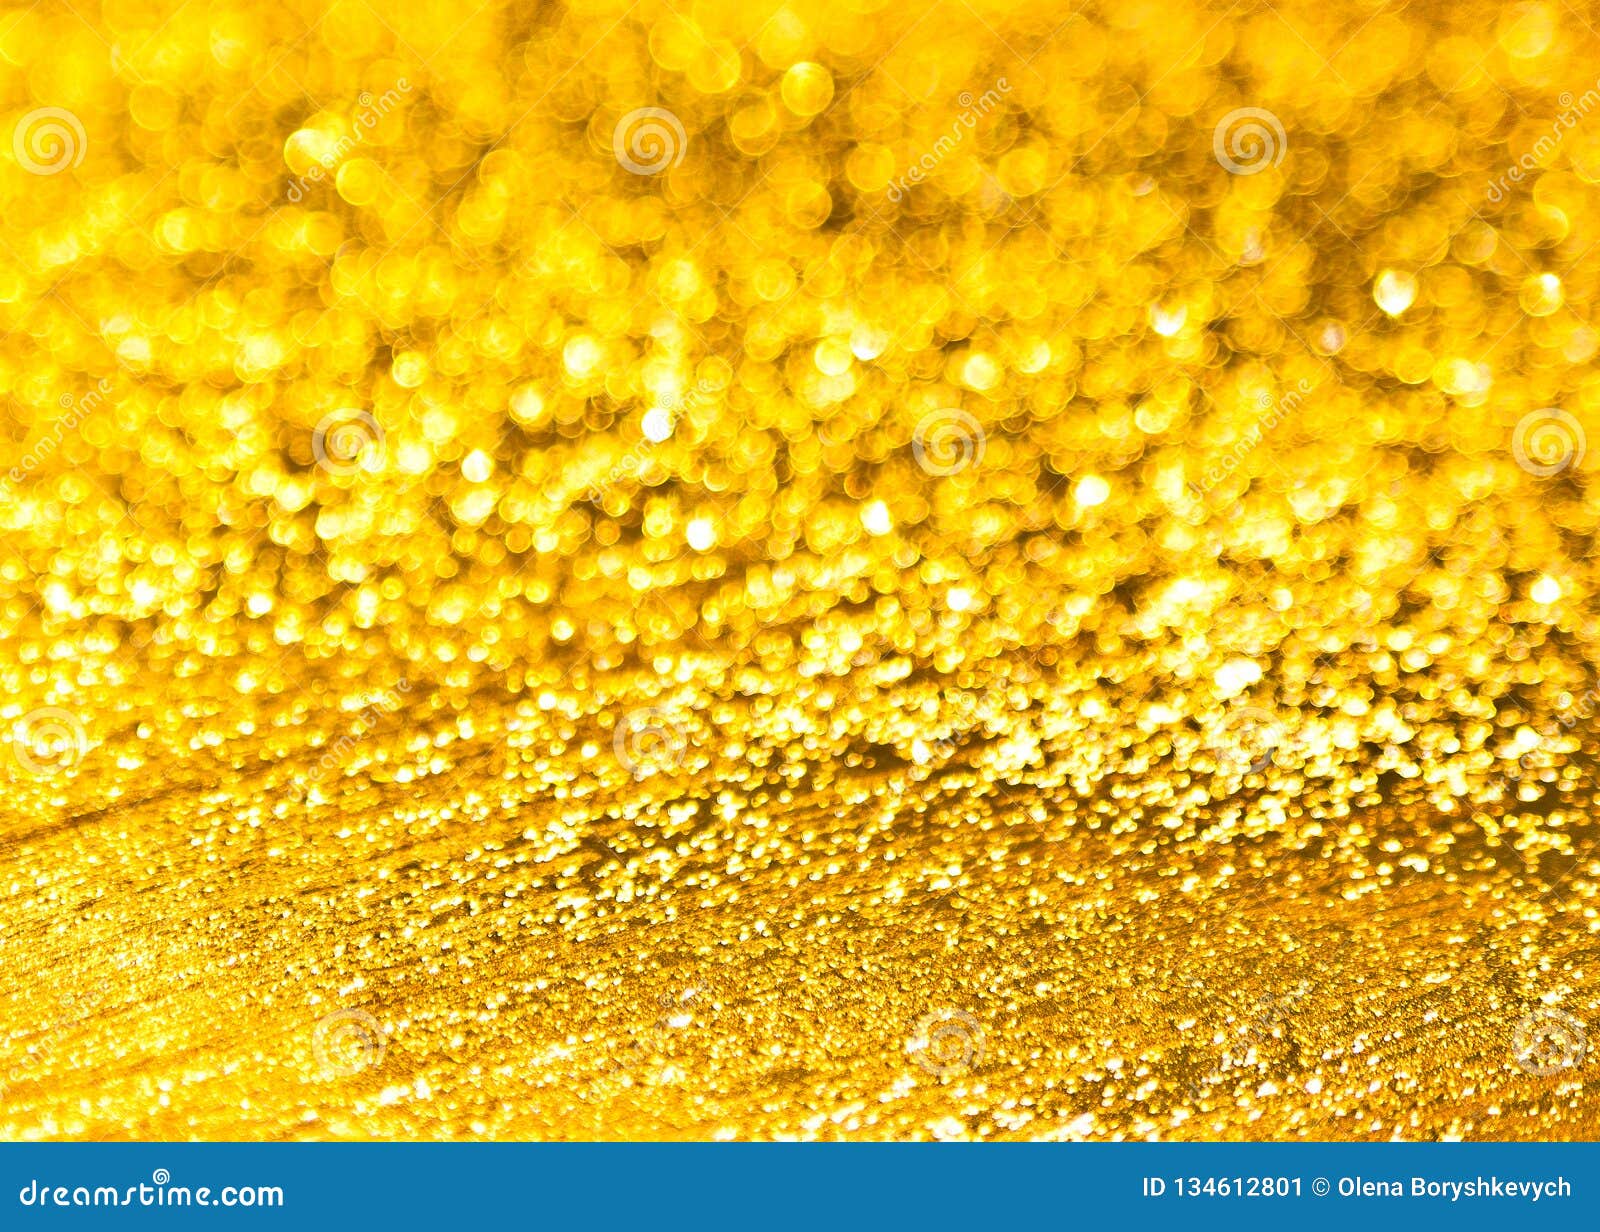 Những tia ánh kim lấp lánh trên nền vàng sáng tỏa ra một vẻ đẹp rực rỡ và sang trọng. Hãy chiêm ngưỡng hình ảnh này để cảm nhận sự chuyển động và độc đáo của nền vàng sáng ánh kim.